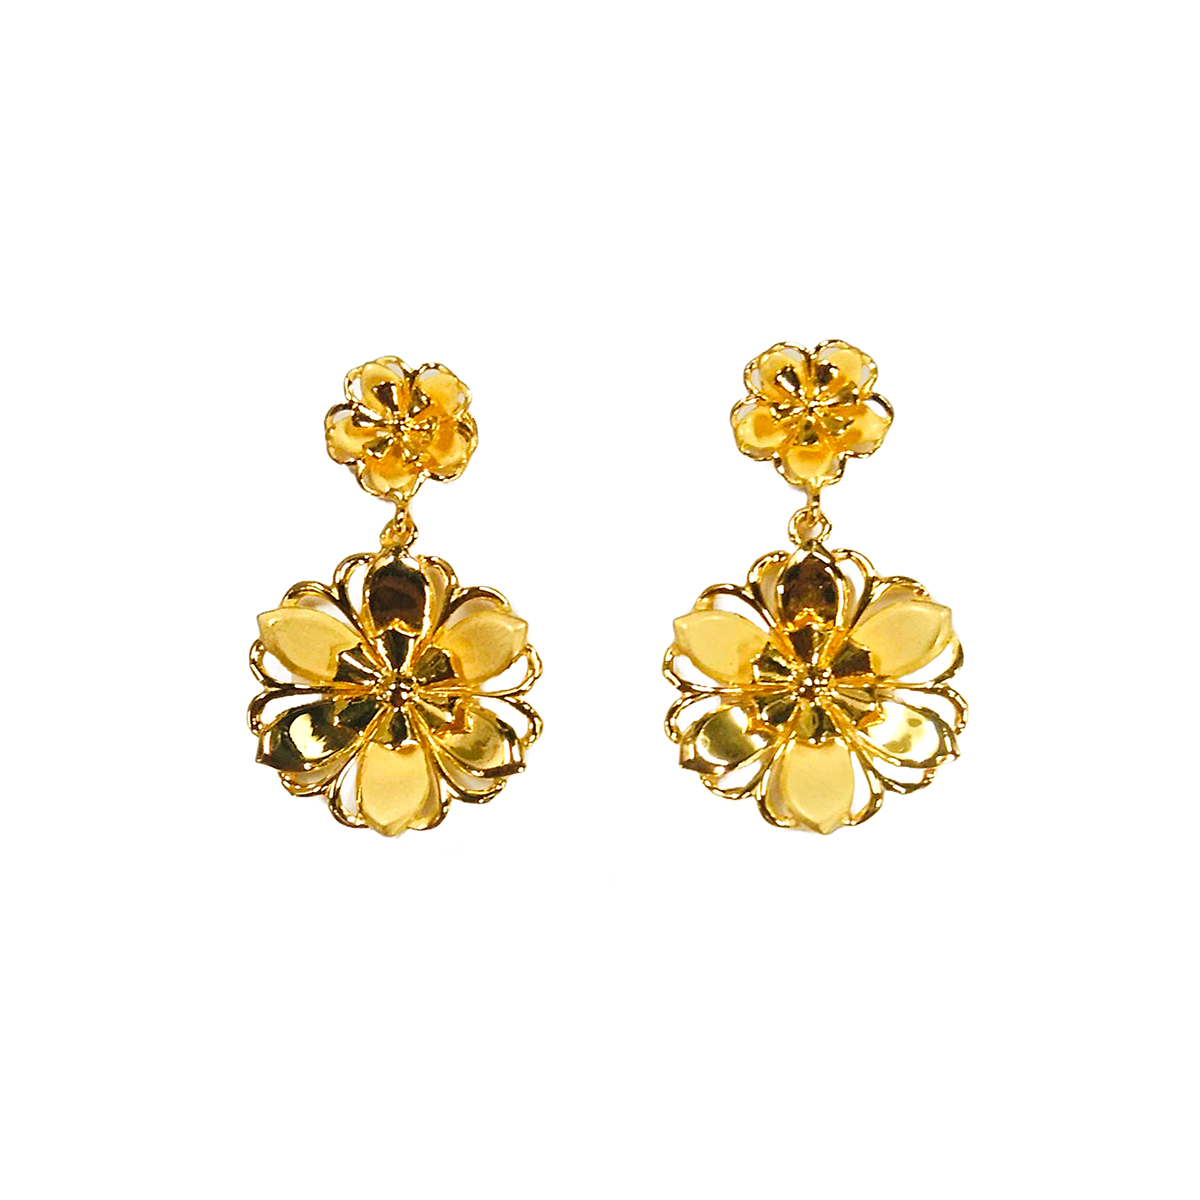 Glorious Grace gold earrings